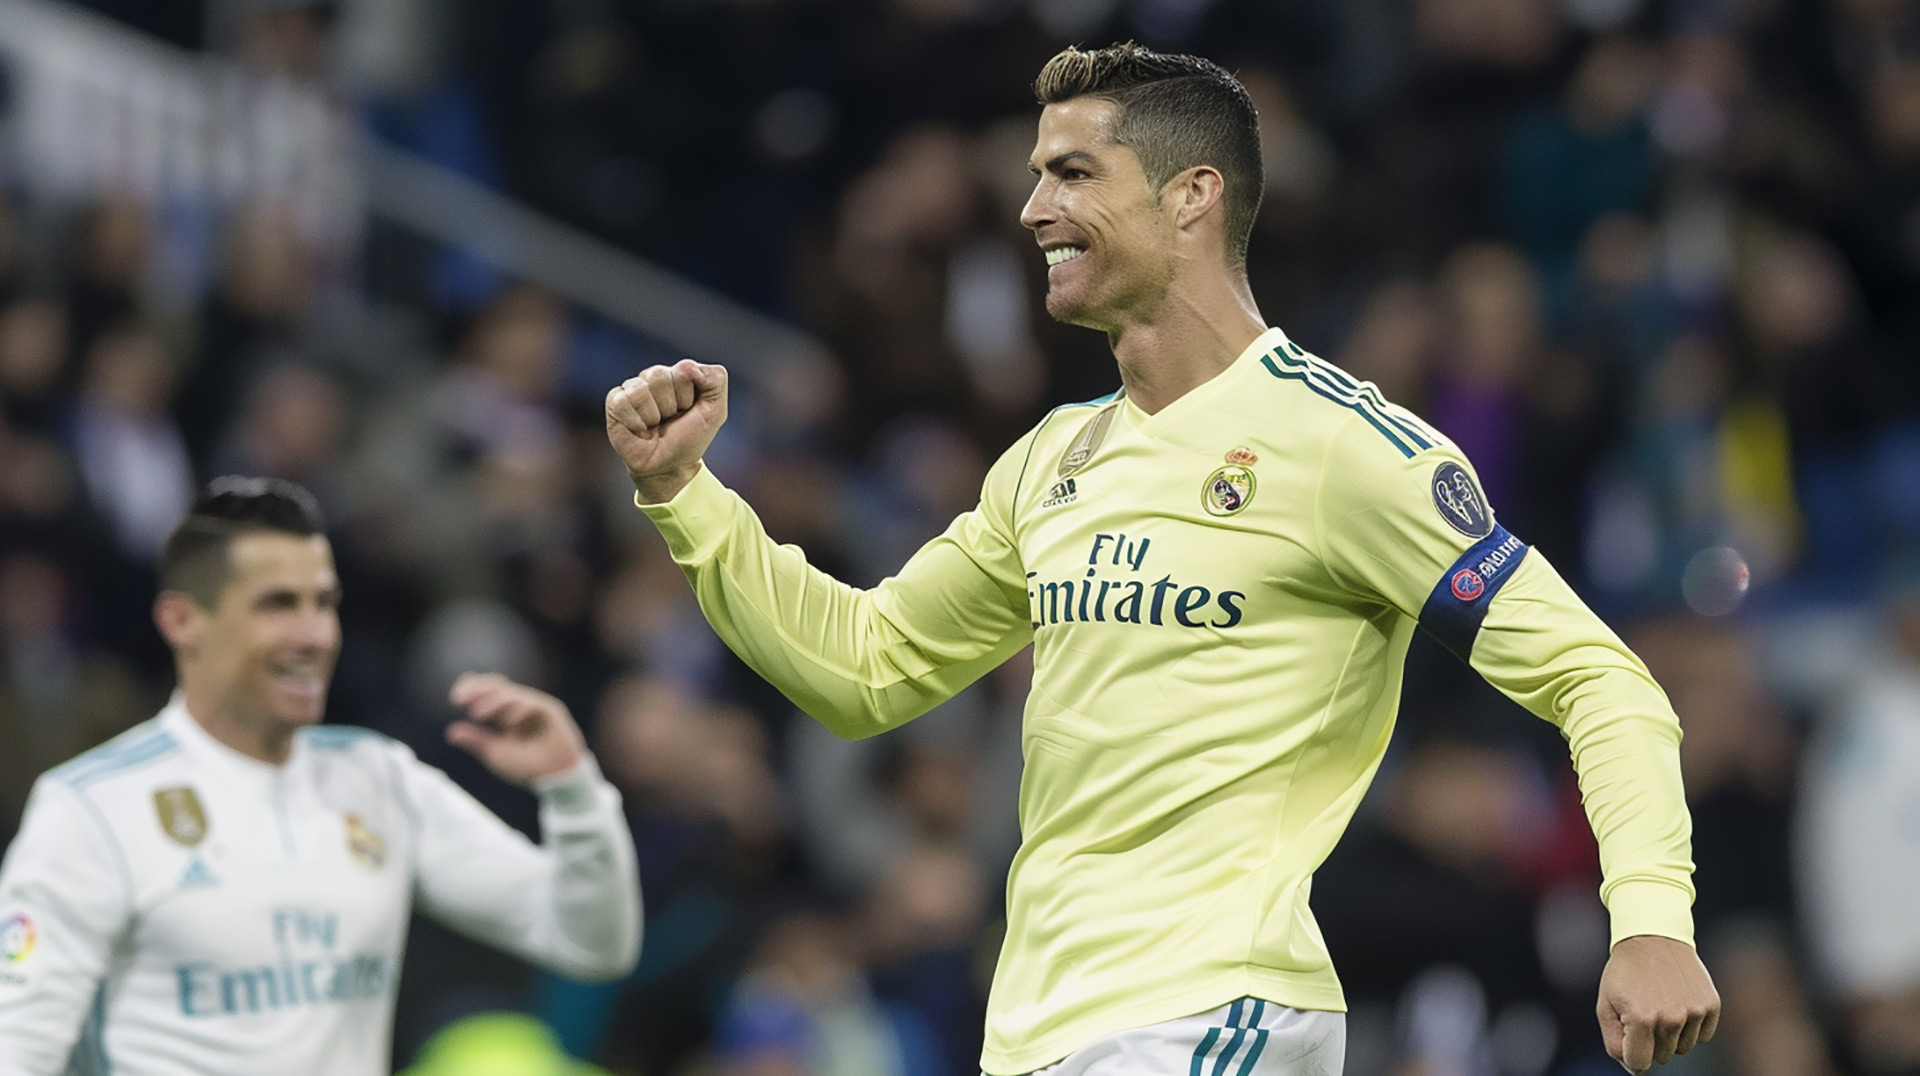 Ronaldo Real Madrid Wallpaper: HD Download for Desktop